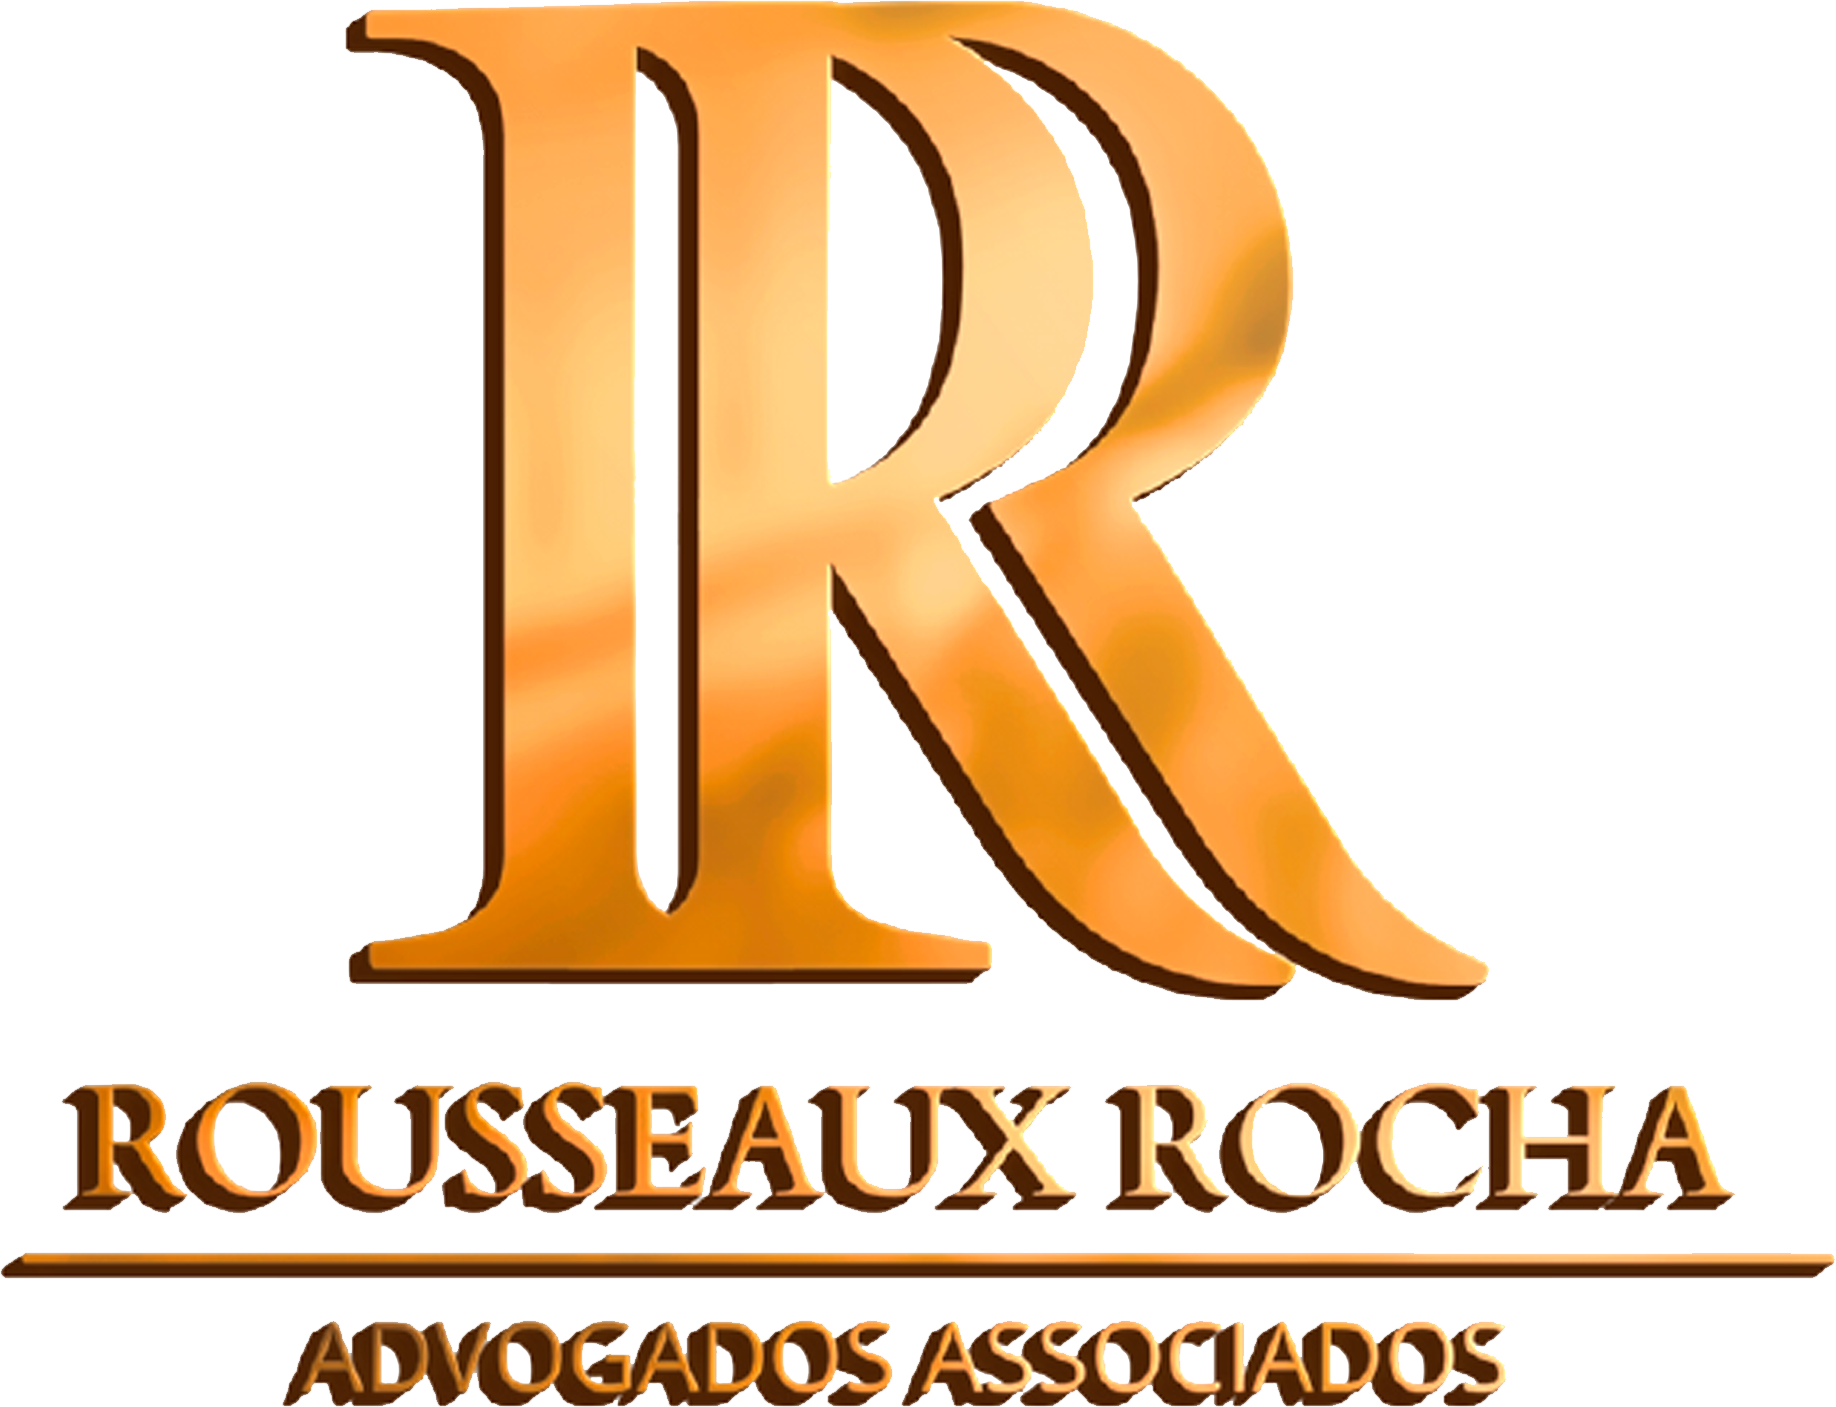 Rousseaux Rocha